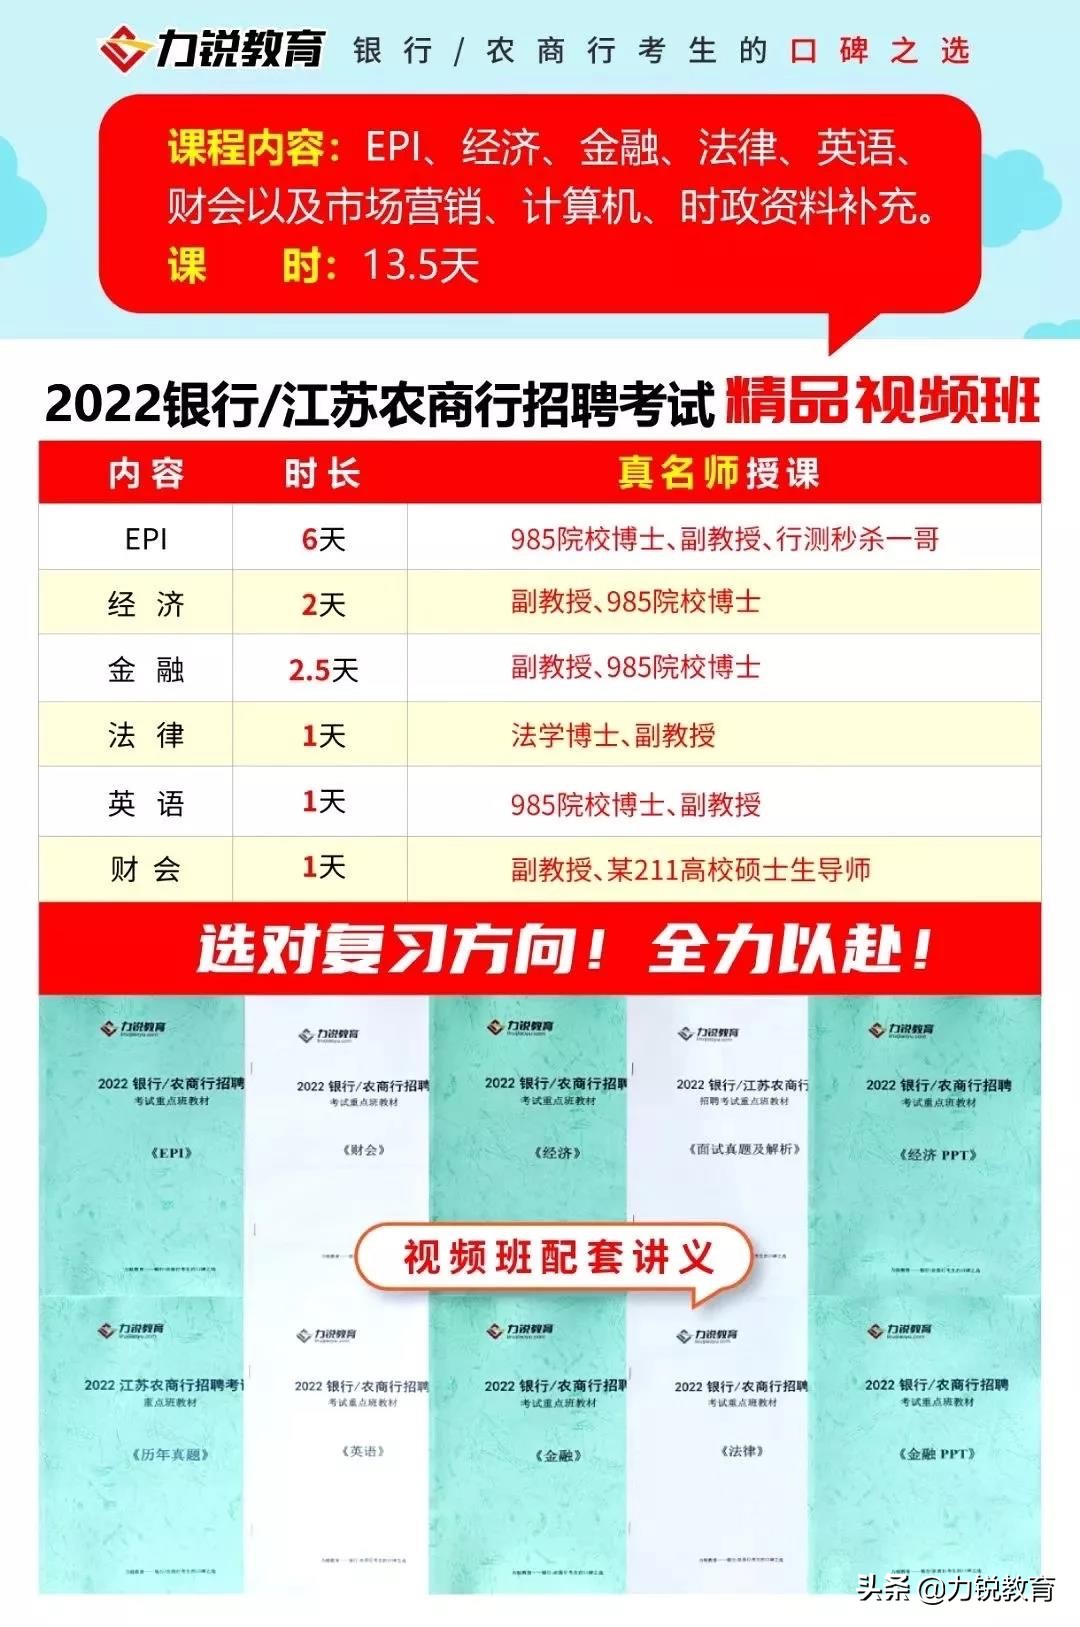 江苏高淳农村商业银行2022年度校园招聘简章